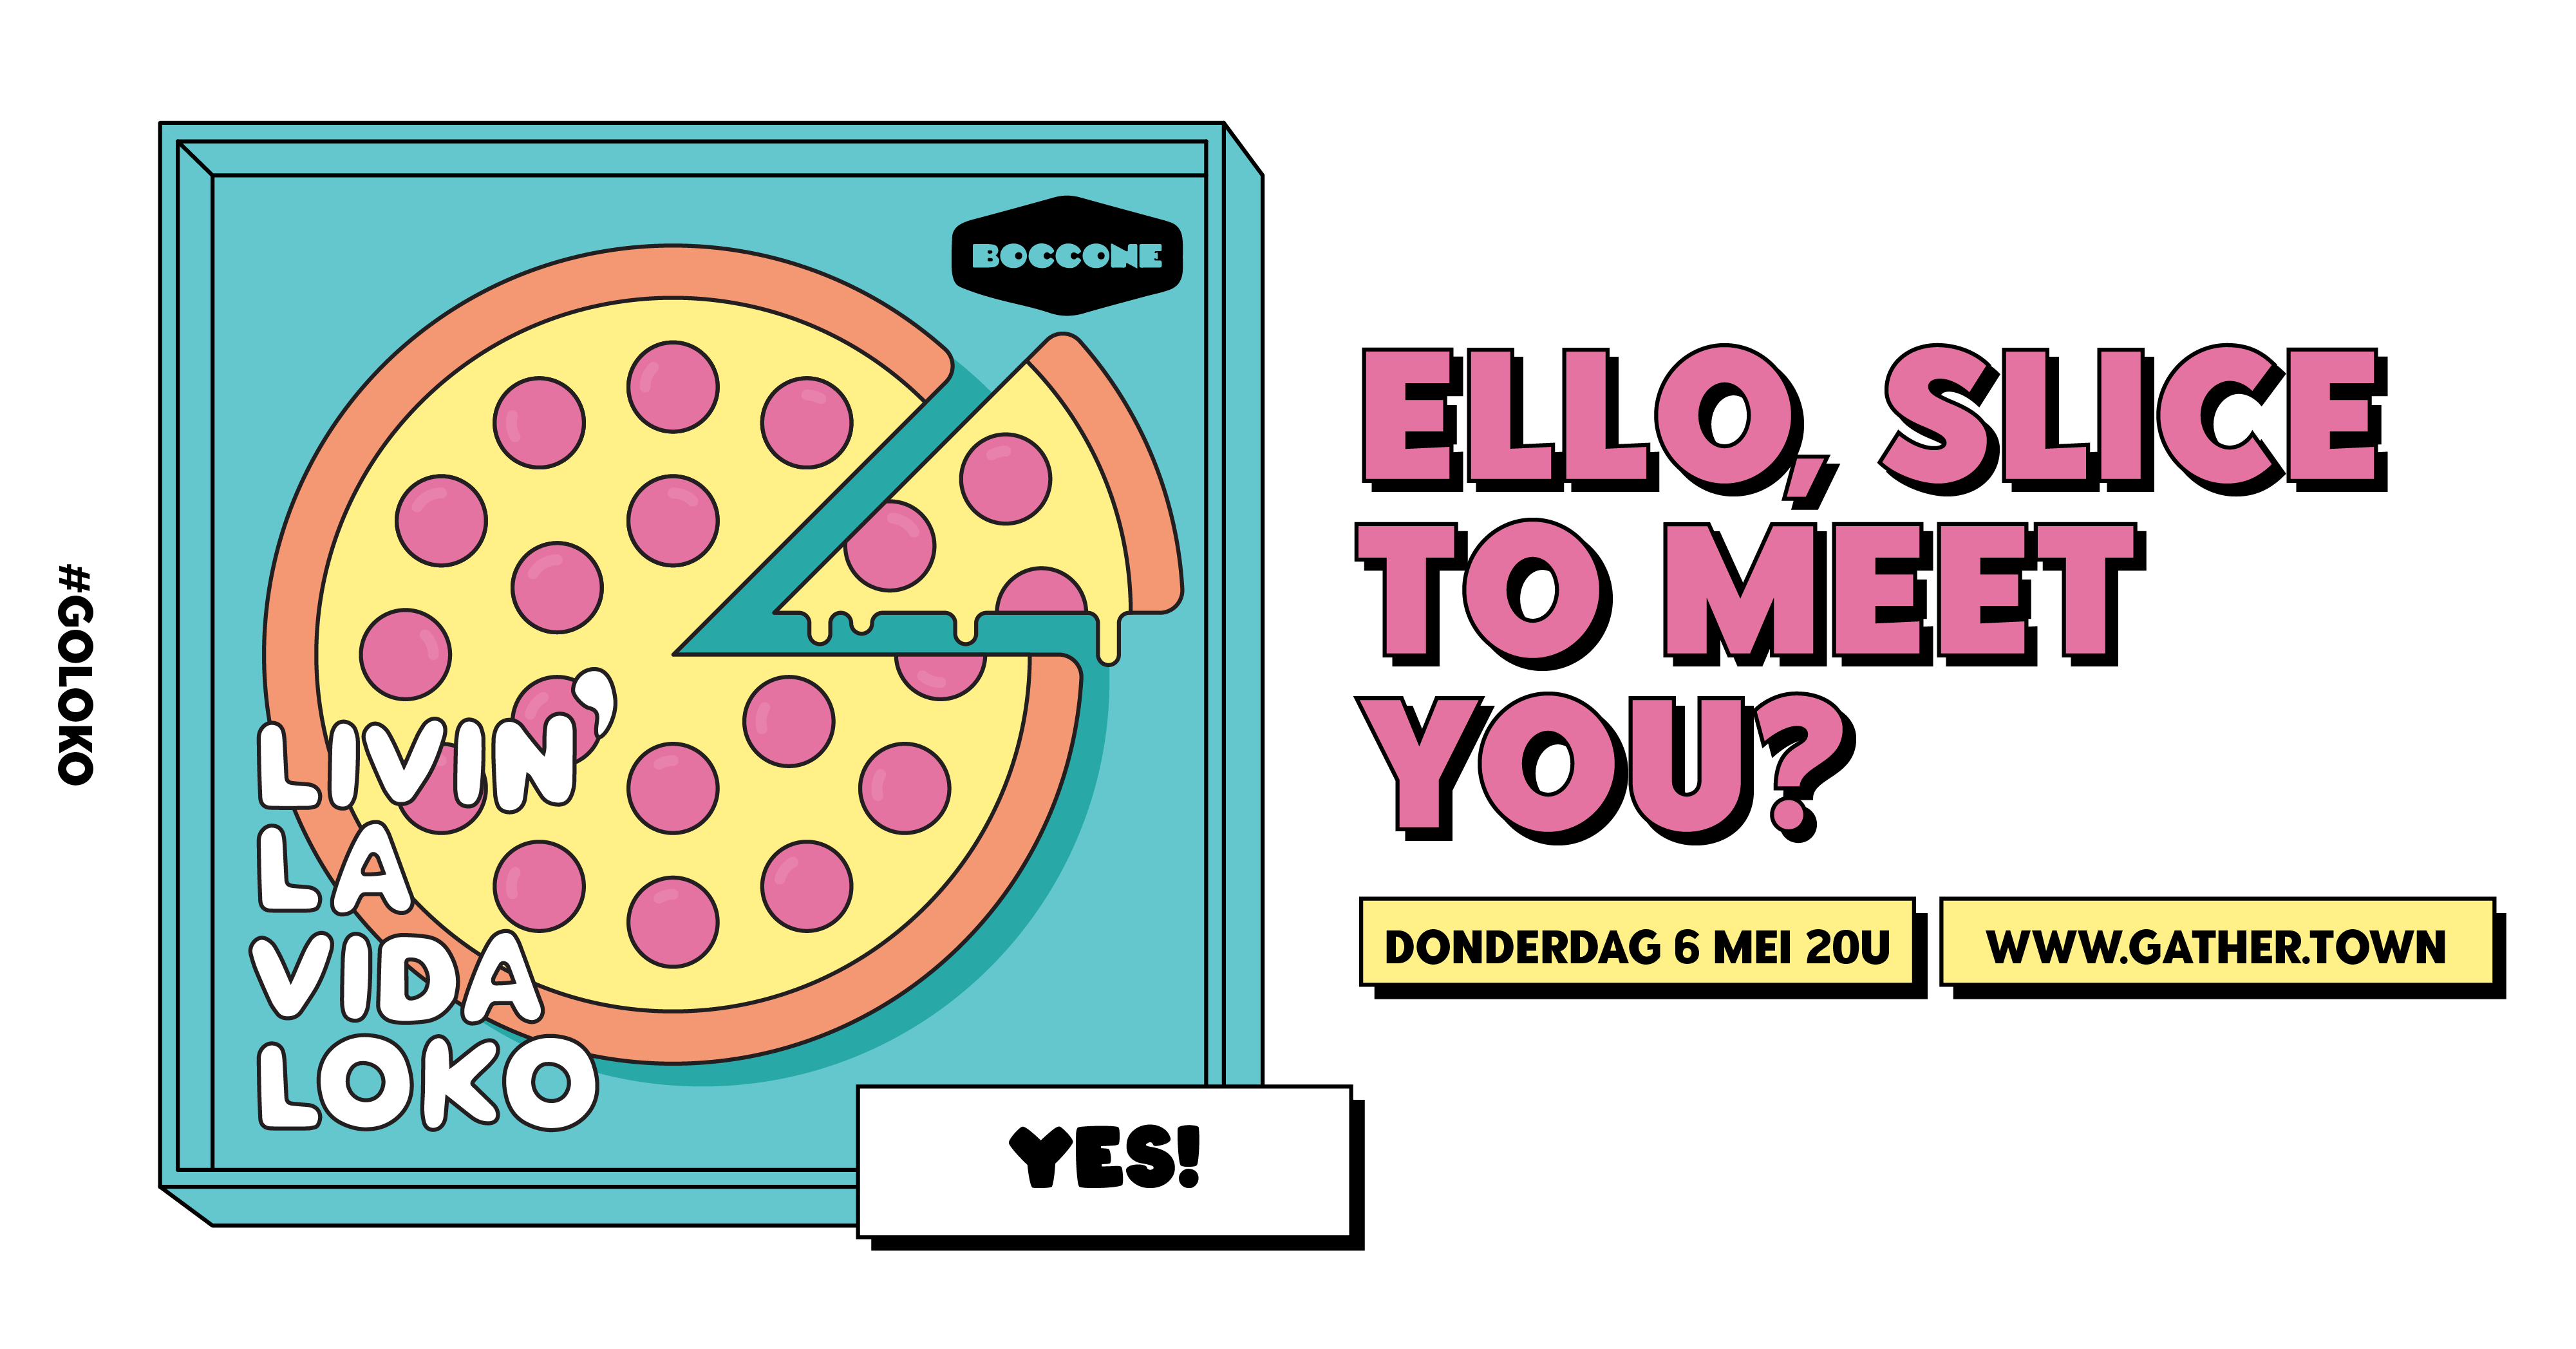 Ello, slice to meet you! 